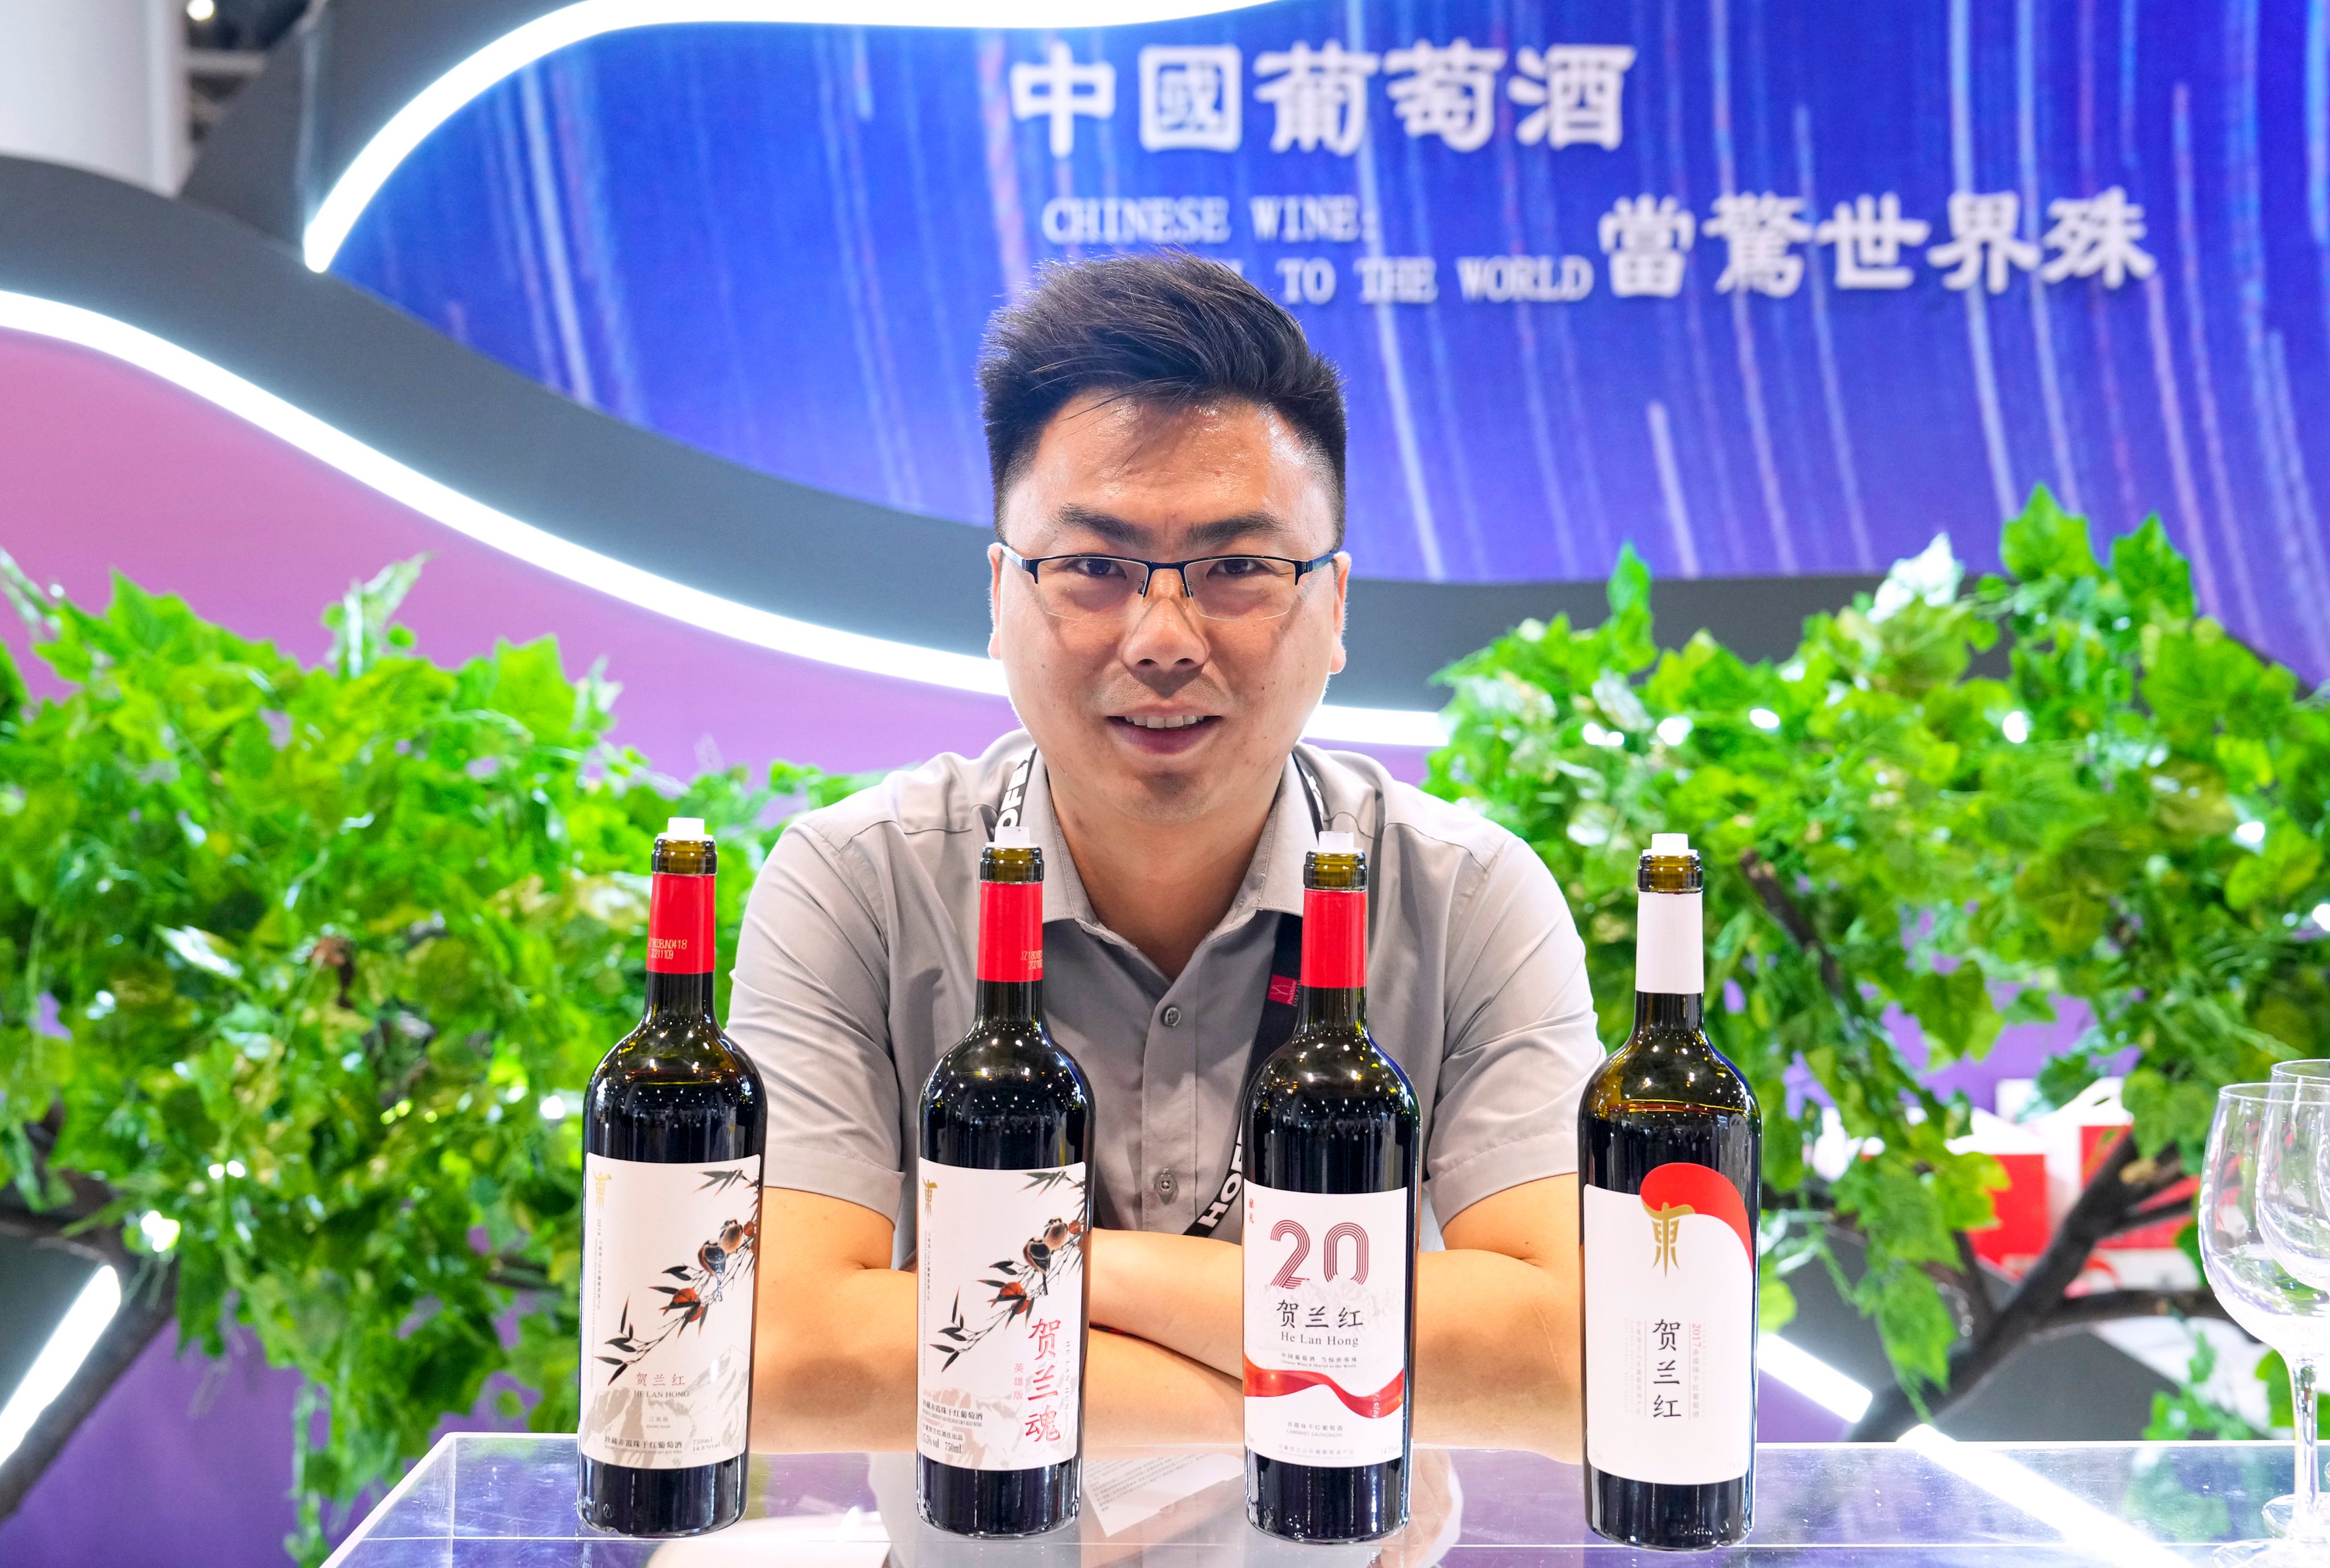 Lu Yongliang, a senior official at Helan Hong Winery,  Ningxia, shows off its products at a major trade show in Hong Kong. Photo: Elson Li